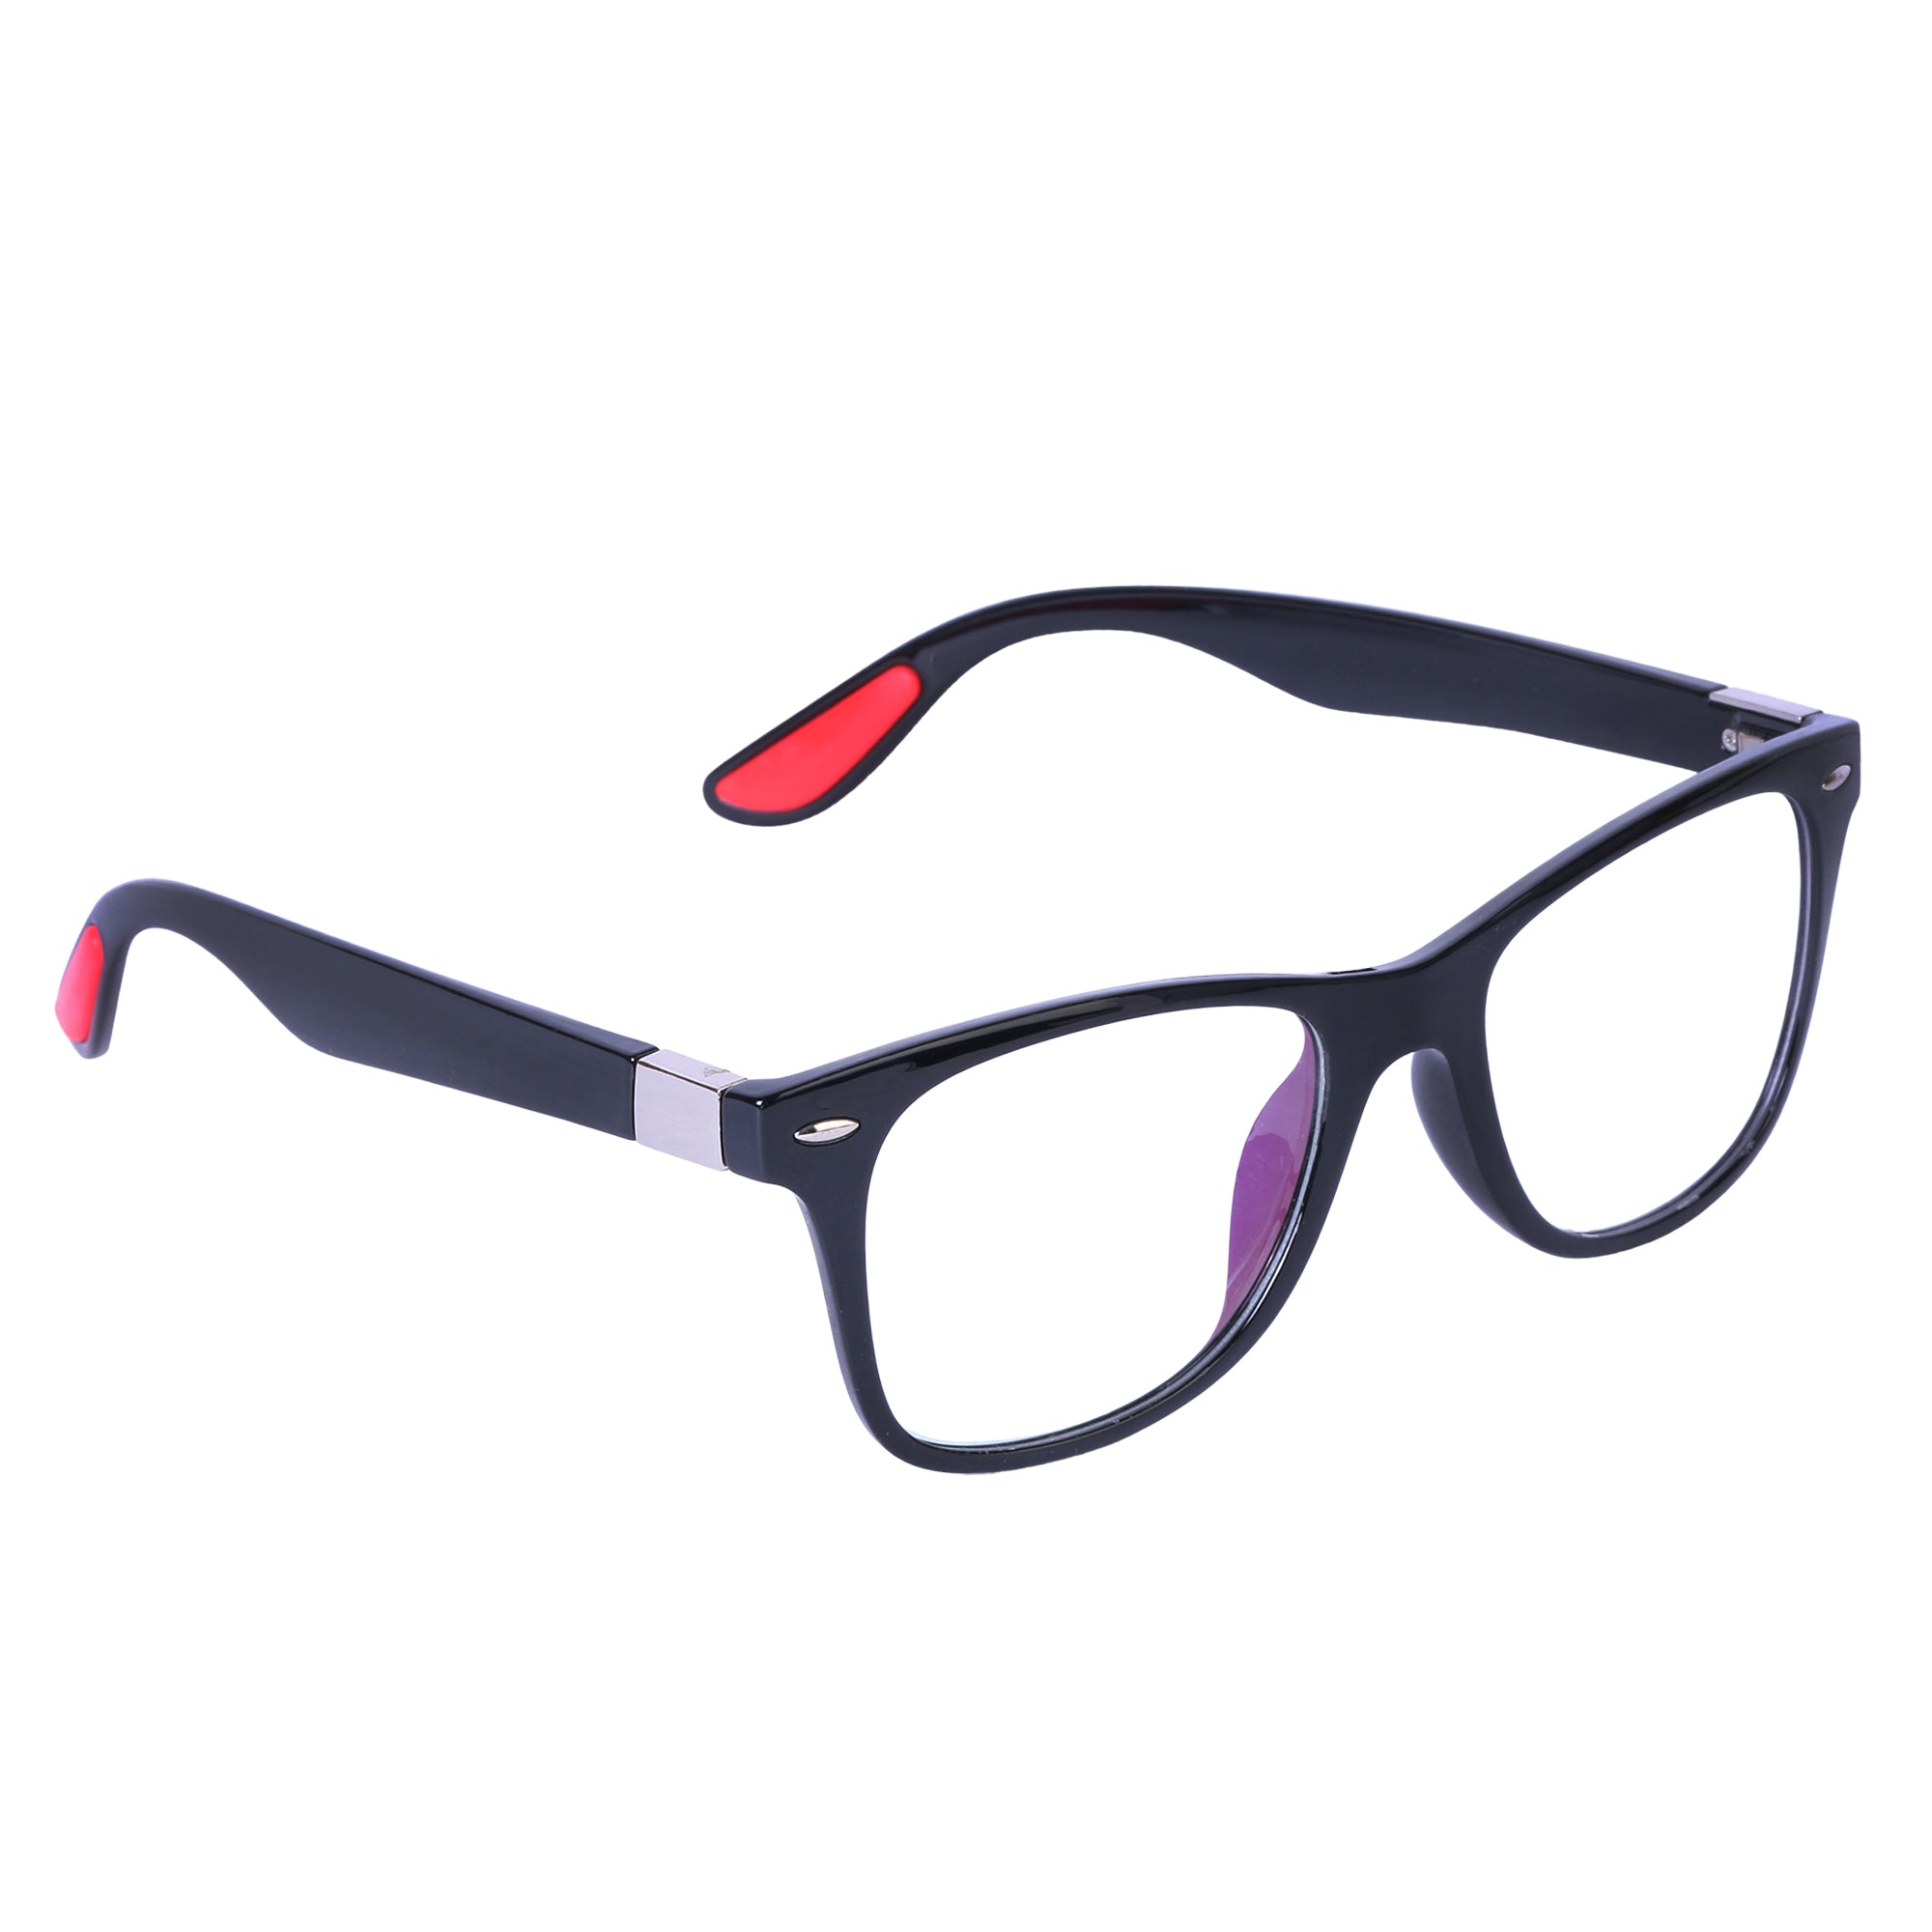 Black & Red Wayfarer Rimmed Eyeglasses - L121-C2